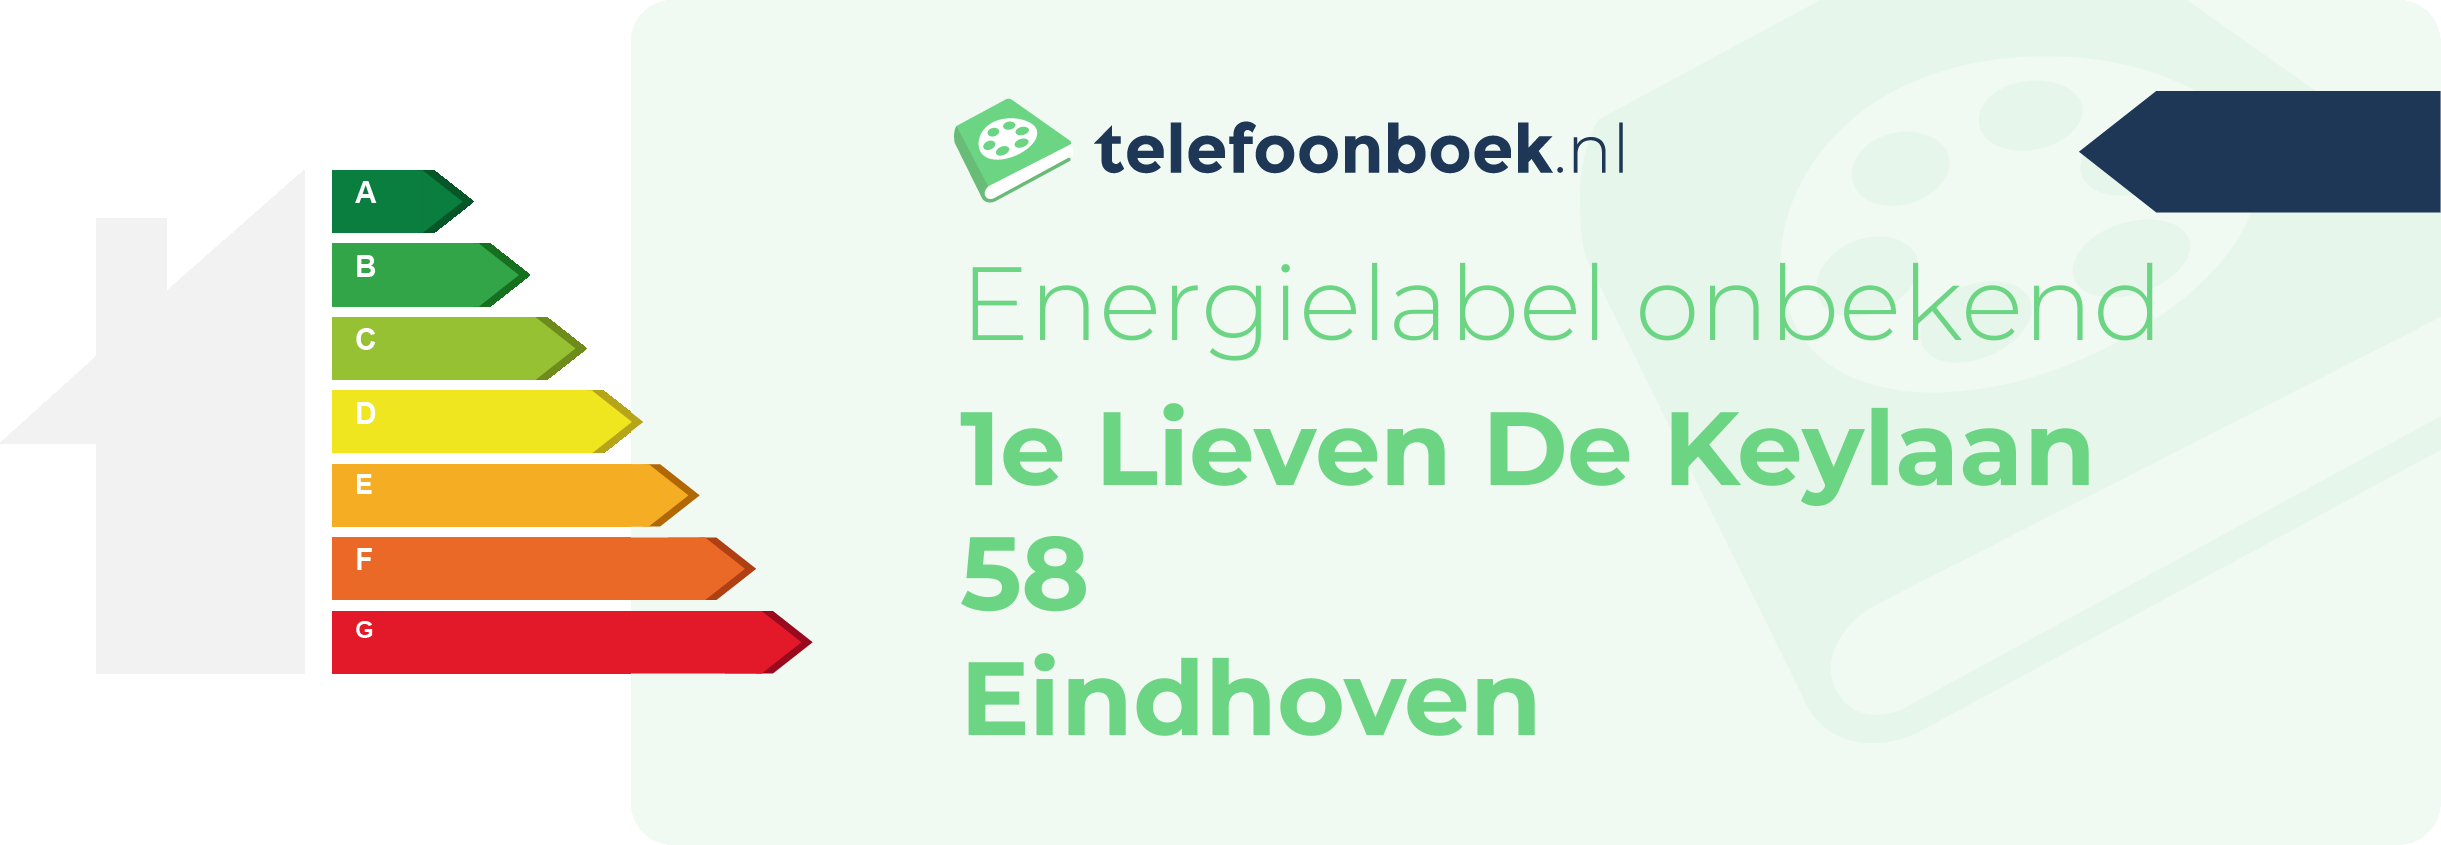 Energielabel 1e Lieven De Keylaan 58 Eindhoven